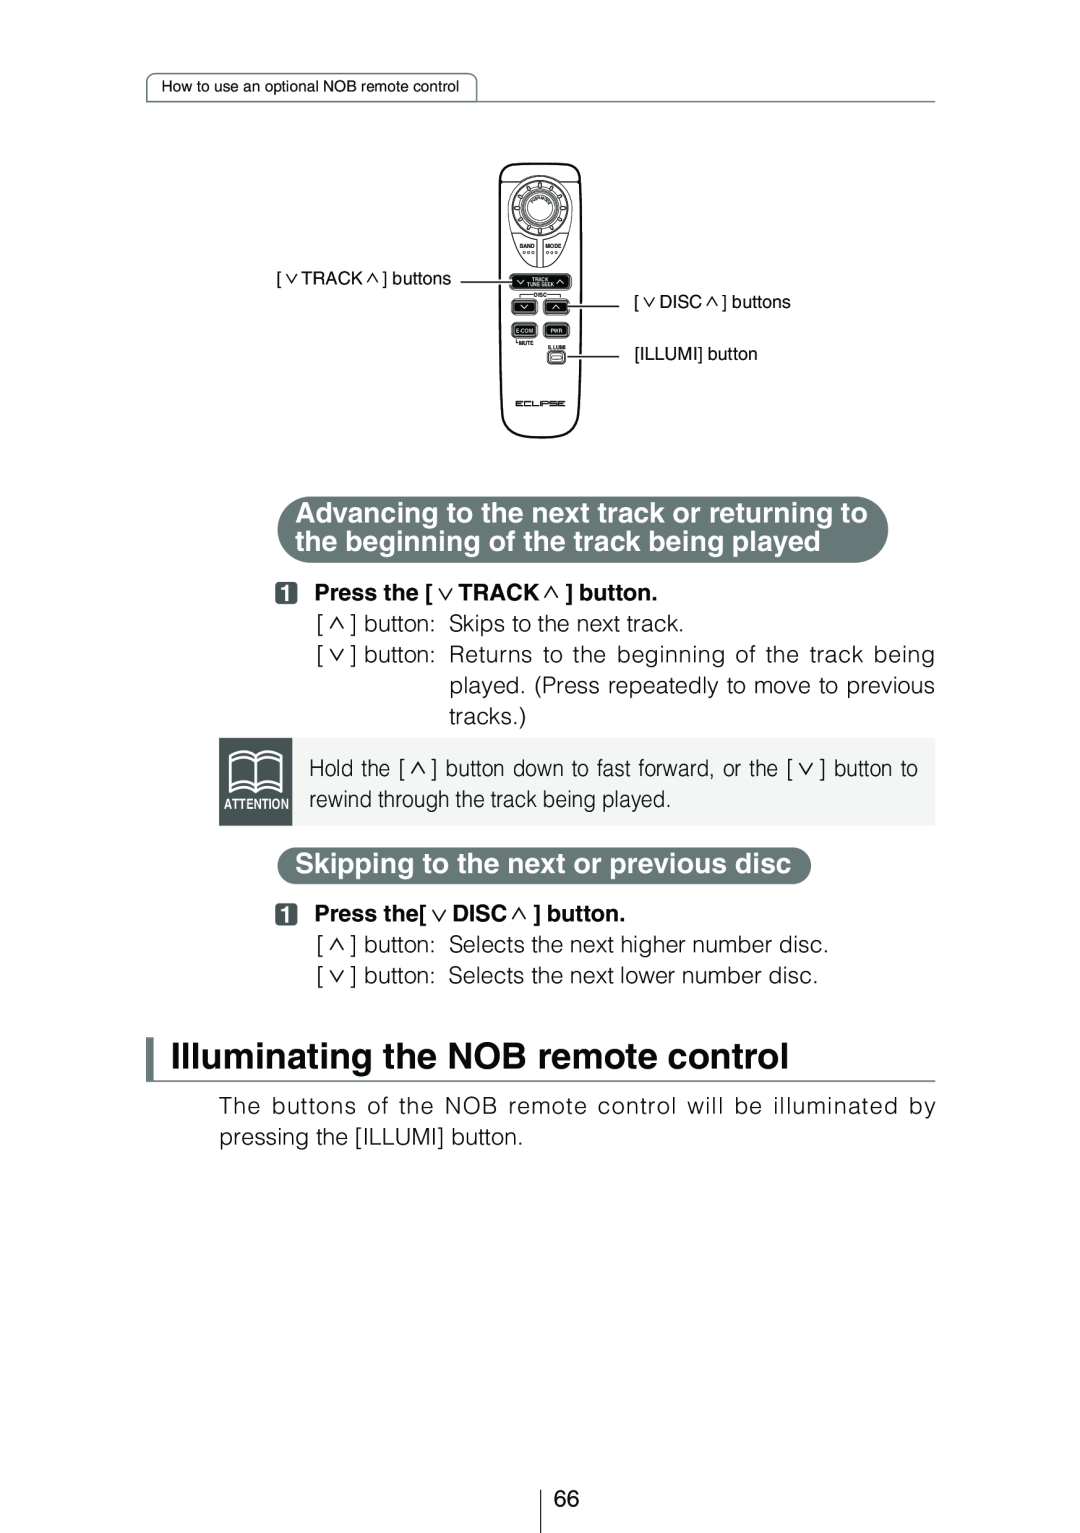 Eclipse - Fujitsu Ten CD3434 Illuminating the NOB remote control, Press the TRACK button, Press the DISC button 